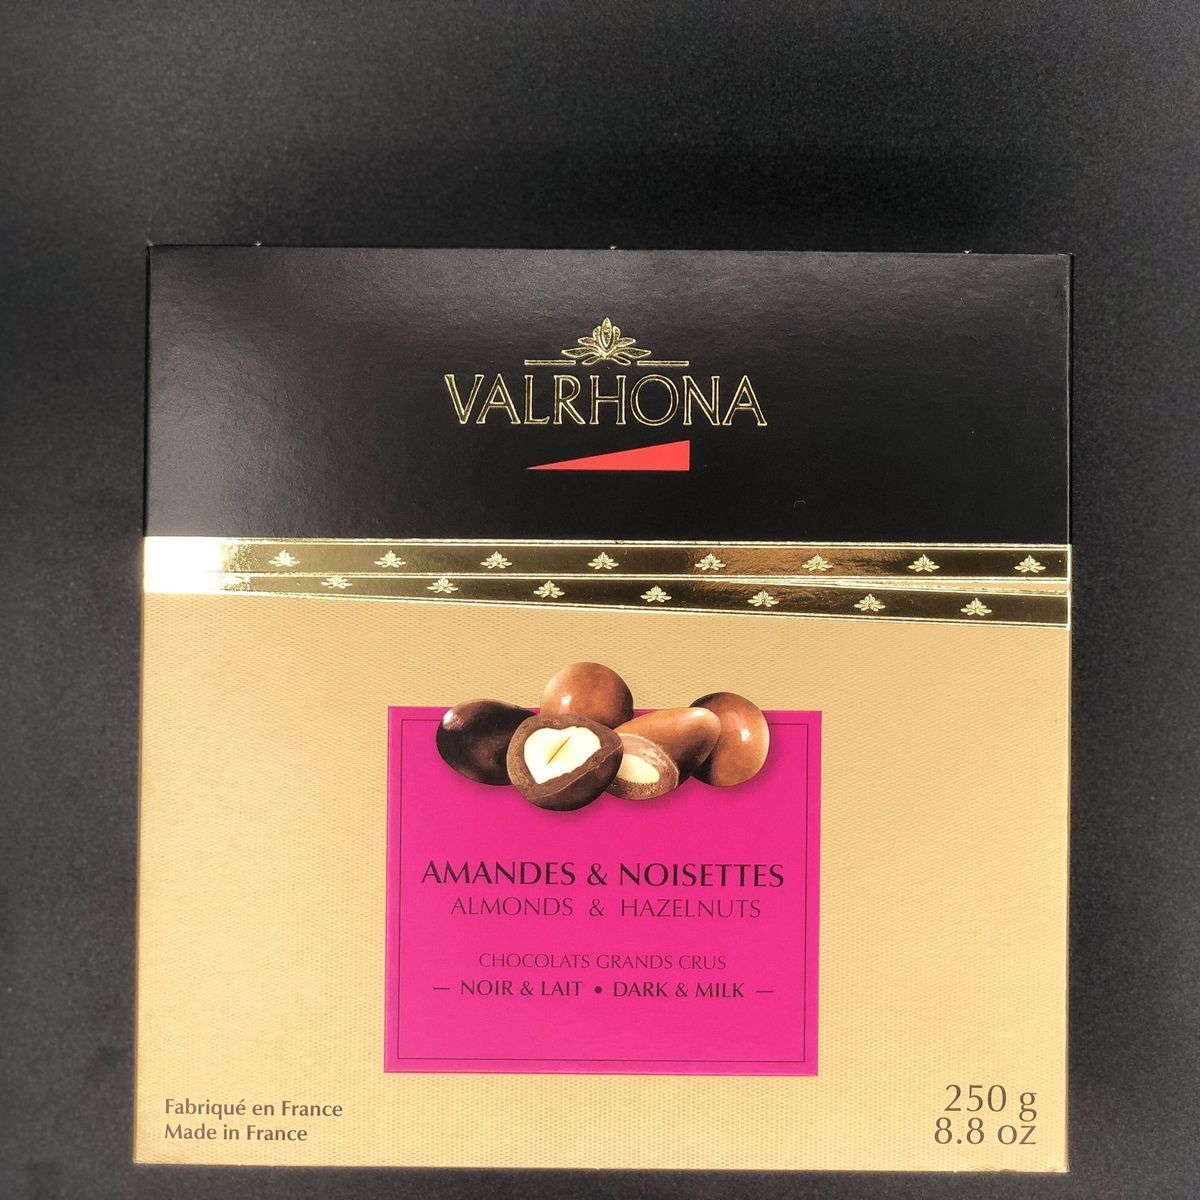 Valrhona Ассорти из фундука и миндаля в горьком и молочном шоколаде, 250 гр